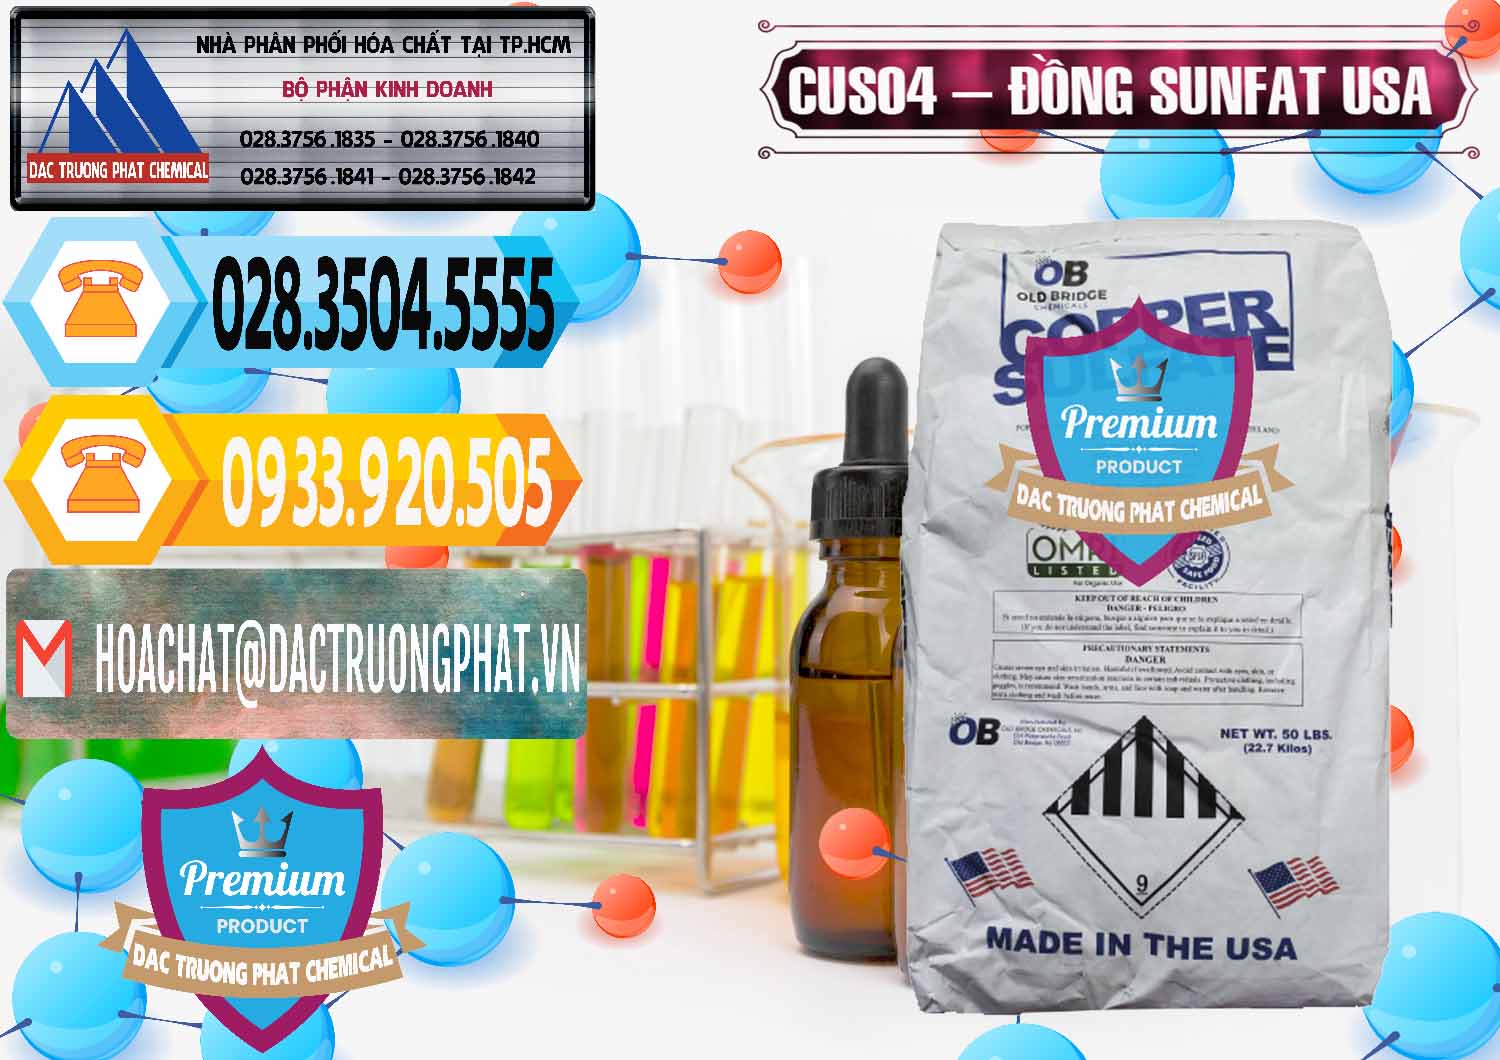 Công ty chuyên cung cấp _ bán CuSO4 – Đồng Sunfat Mỹ USA - 0479 - Công ty bán và phân phối hóa chất tại TP.HCM - hoachattayrua.net